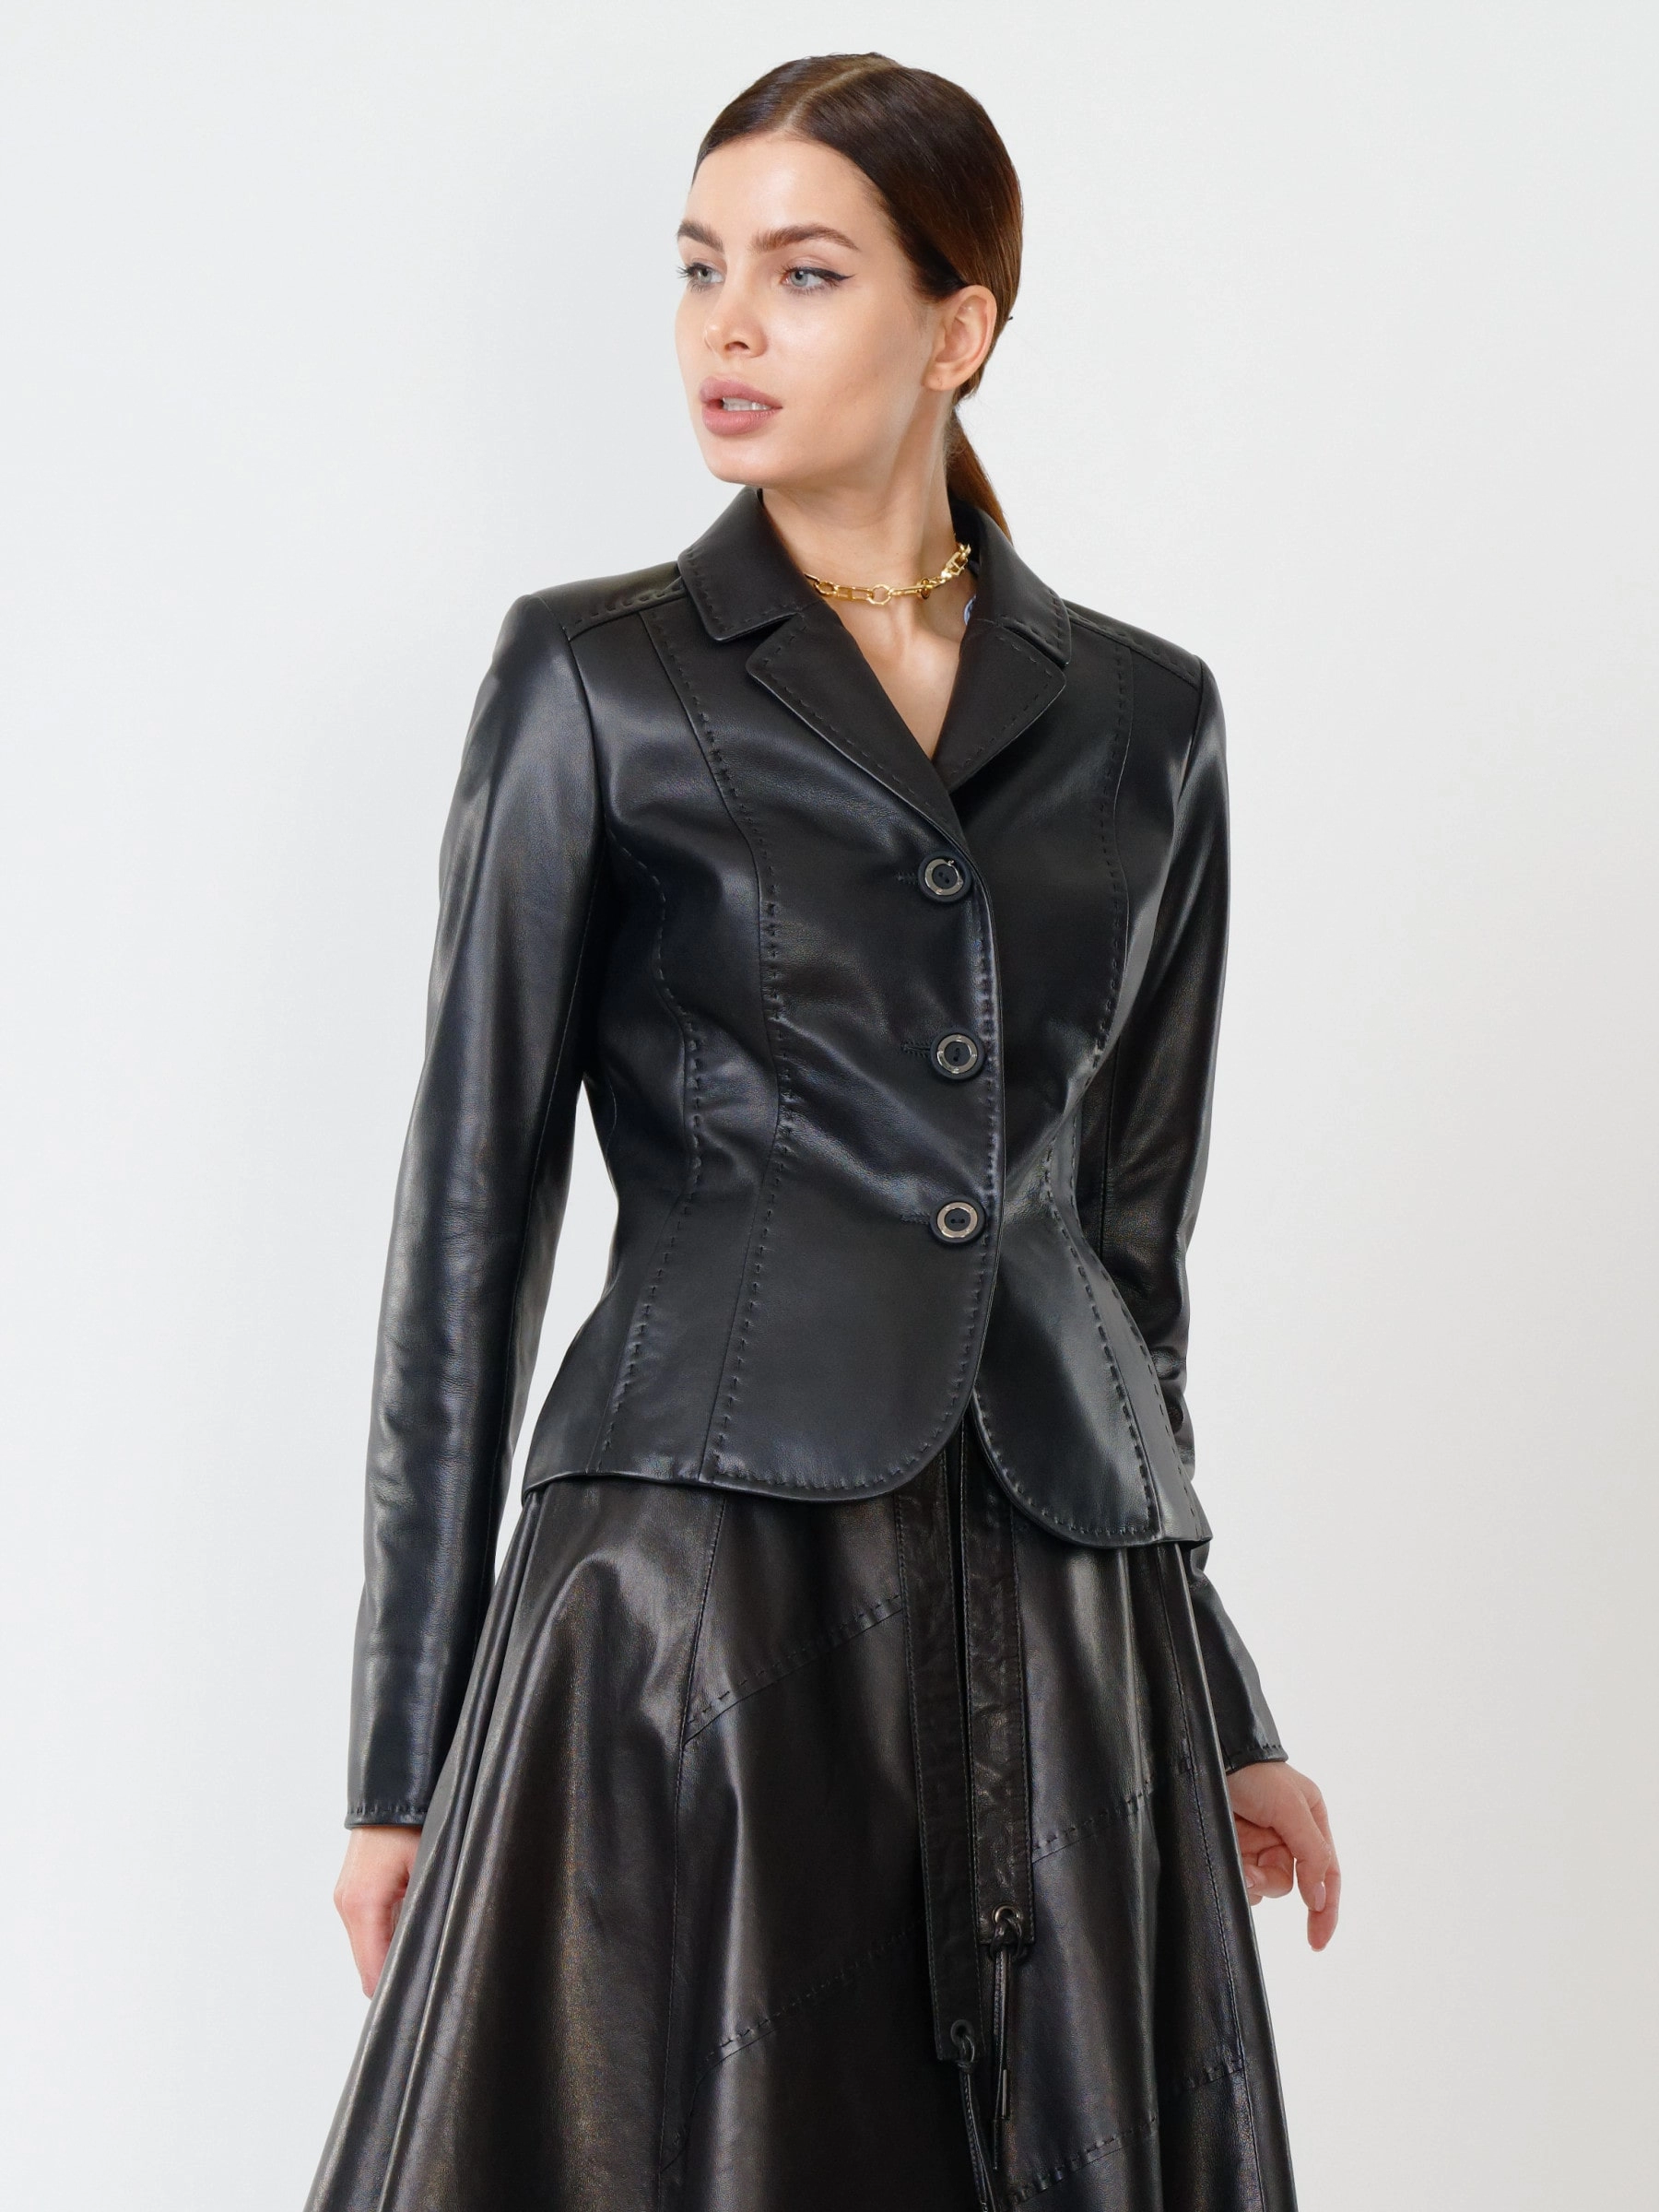 Купить кожаный костюм женский: пиджак 316рс + юбка 01рс, черный, размер 44,  артикул 111150 по цене 49 381 руб. в Москве в магазине Primo Vello